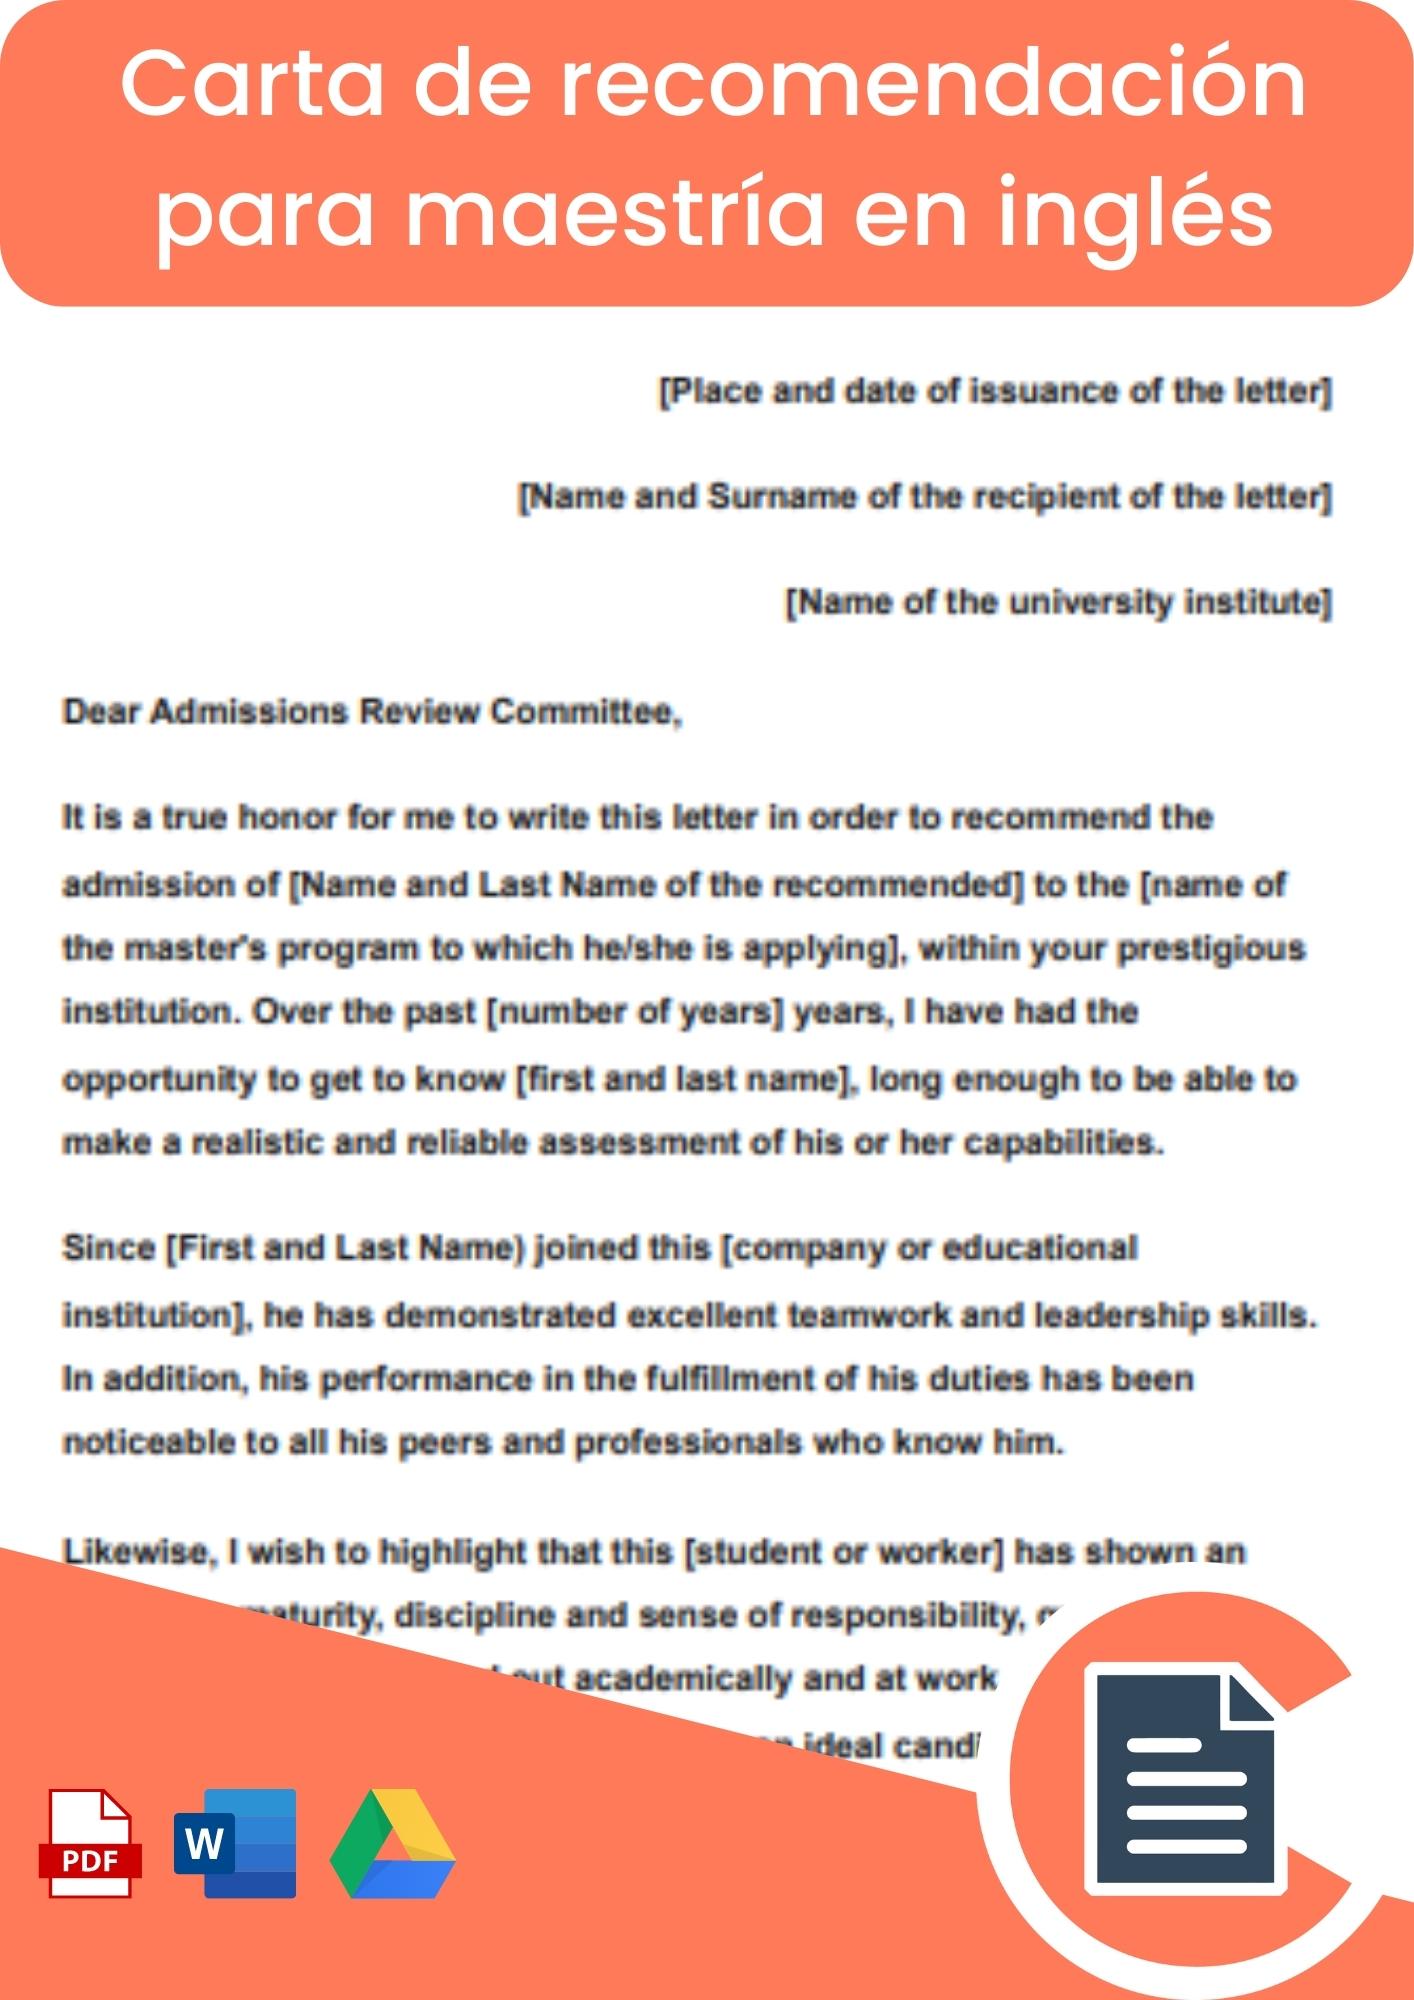 Carta de recomendación para maestria en inglés 